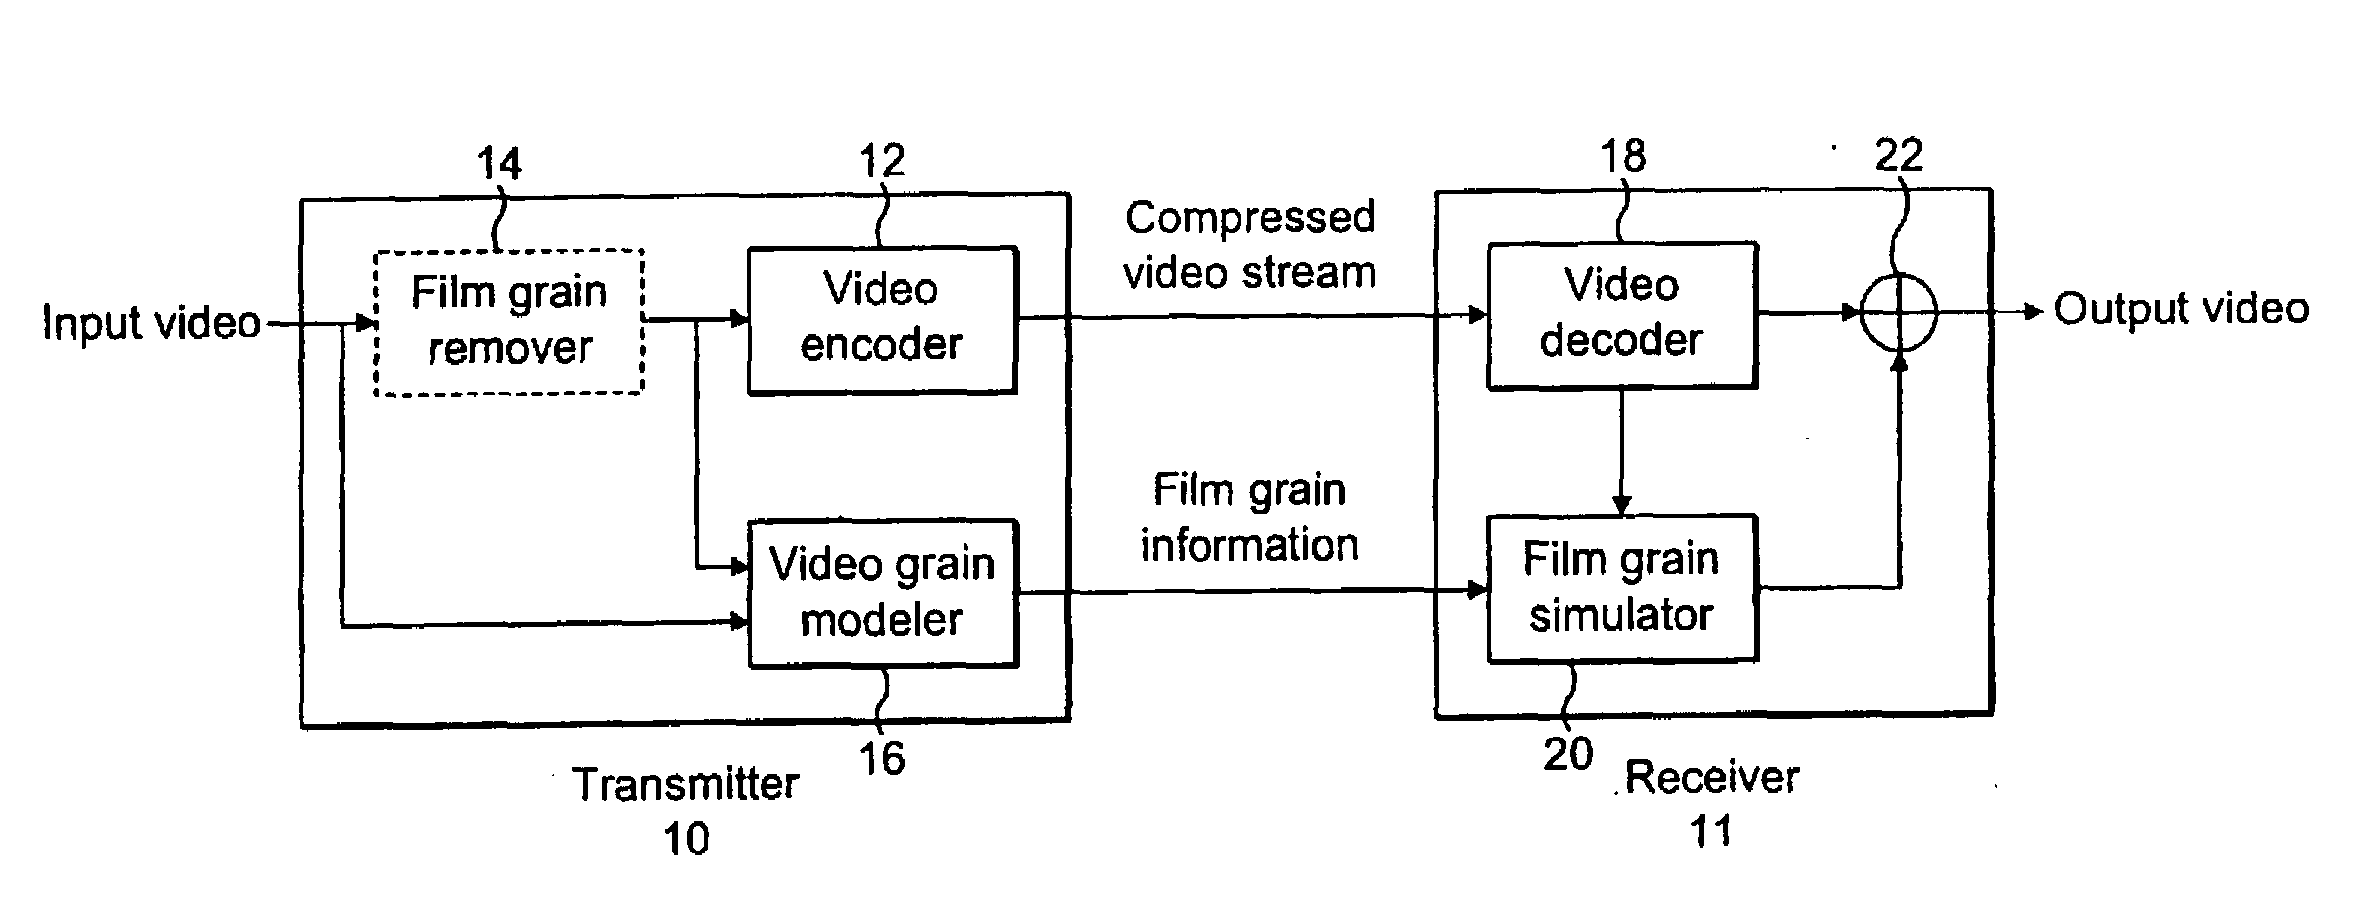 Low-Complexity Film Grain Simulation Technique